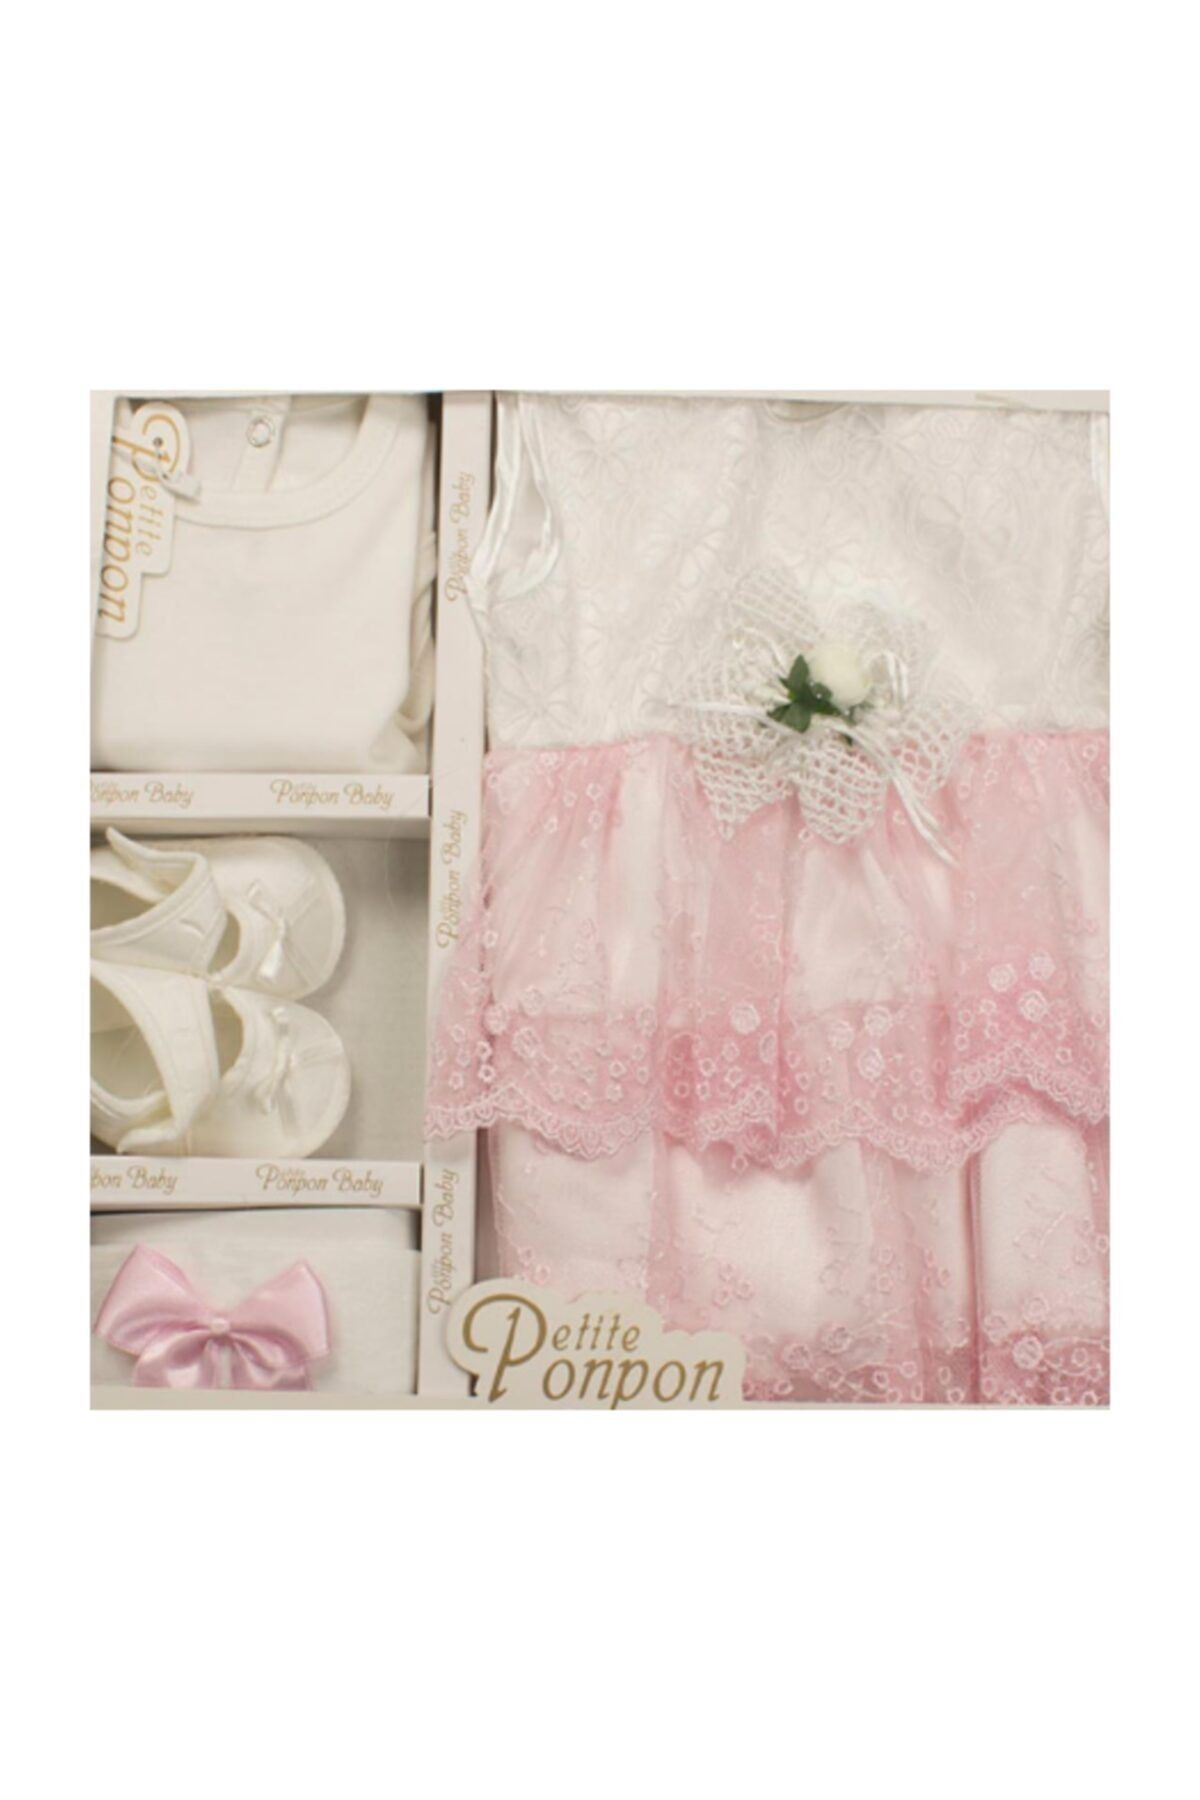 Peite Ponpon Baby Ponpon Kız Elbise Seti Yeni Doğan - Hastane Çıkışı Ve Mevlütlük Takım ( 0-6 Ay)